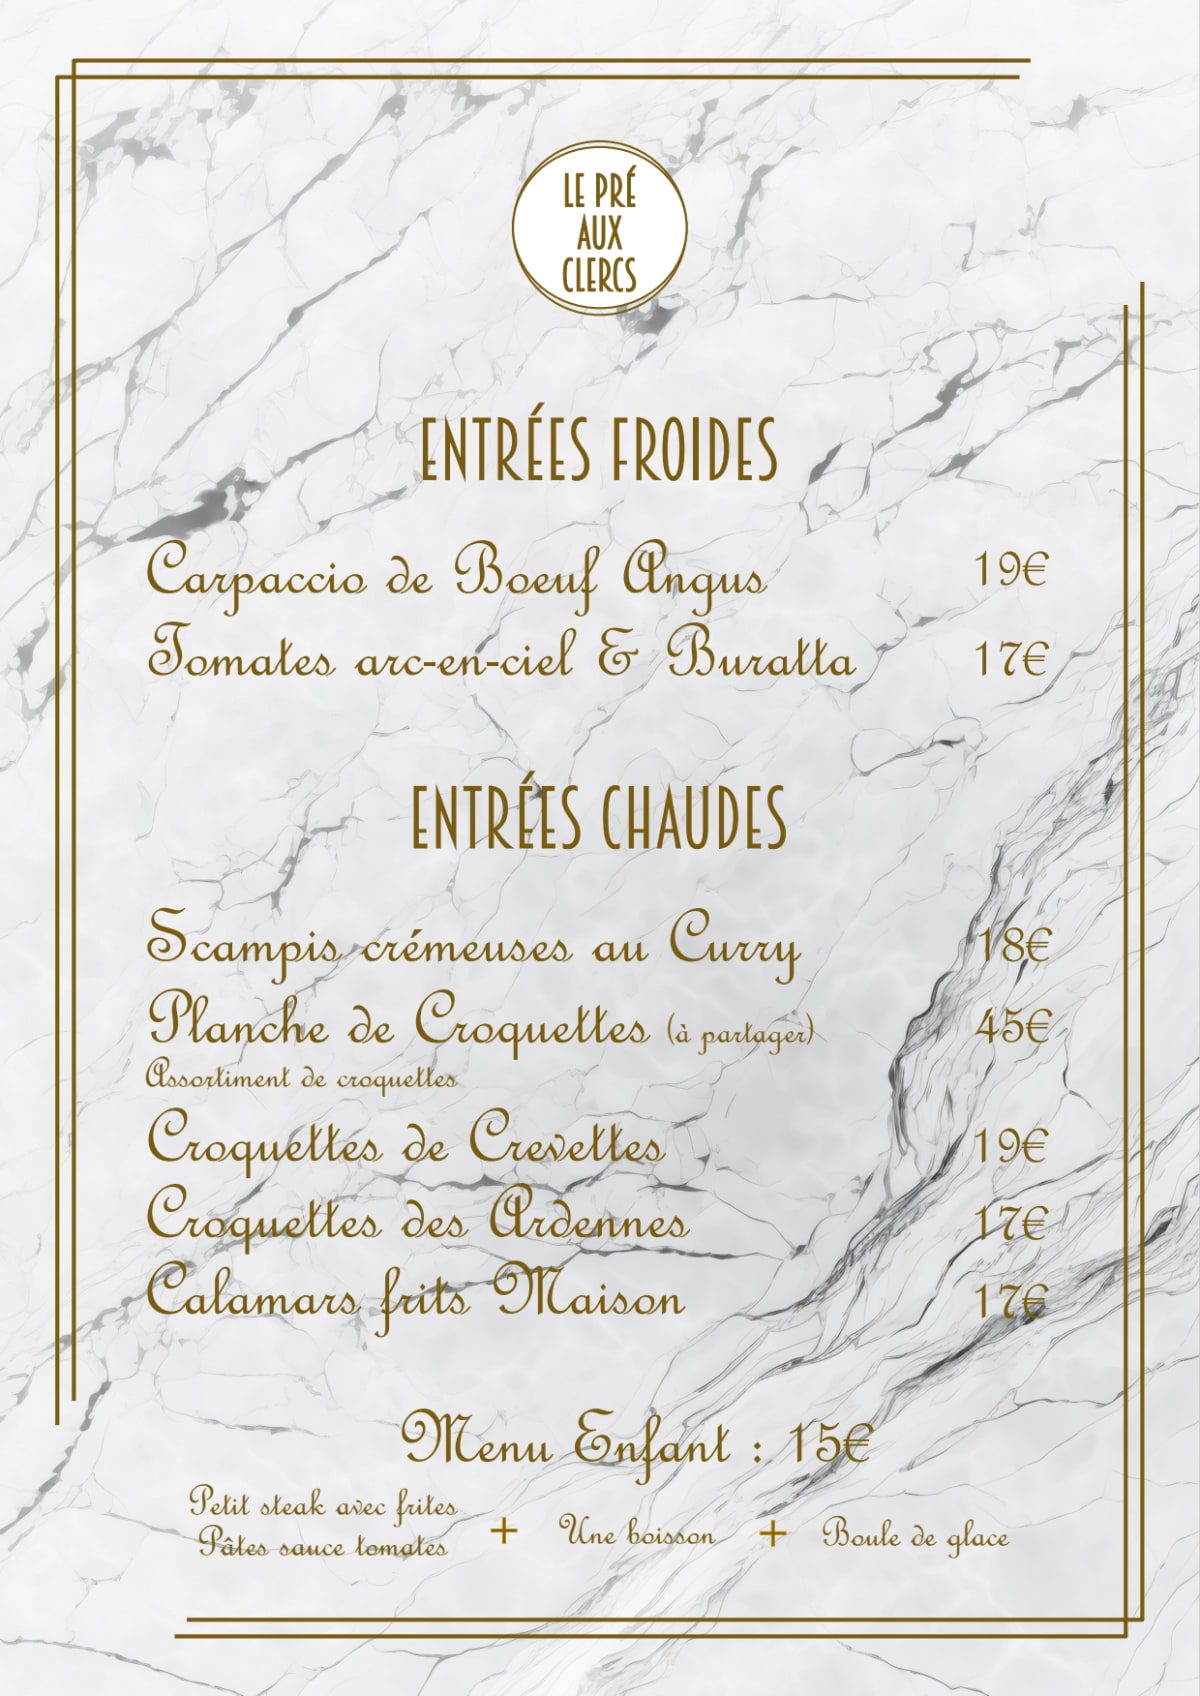 Le Pré aux Clercs menu